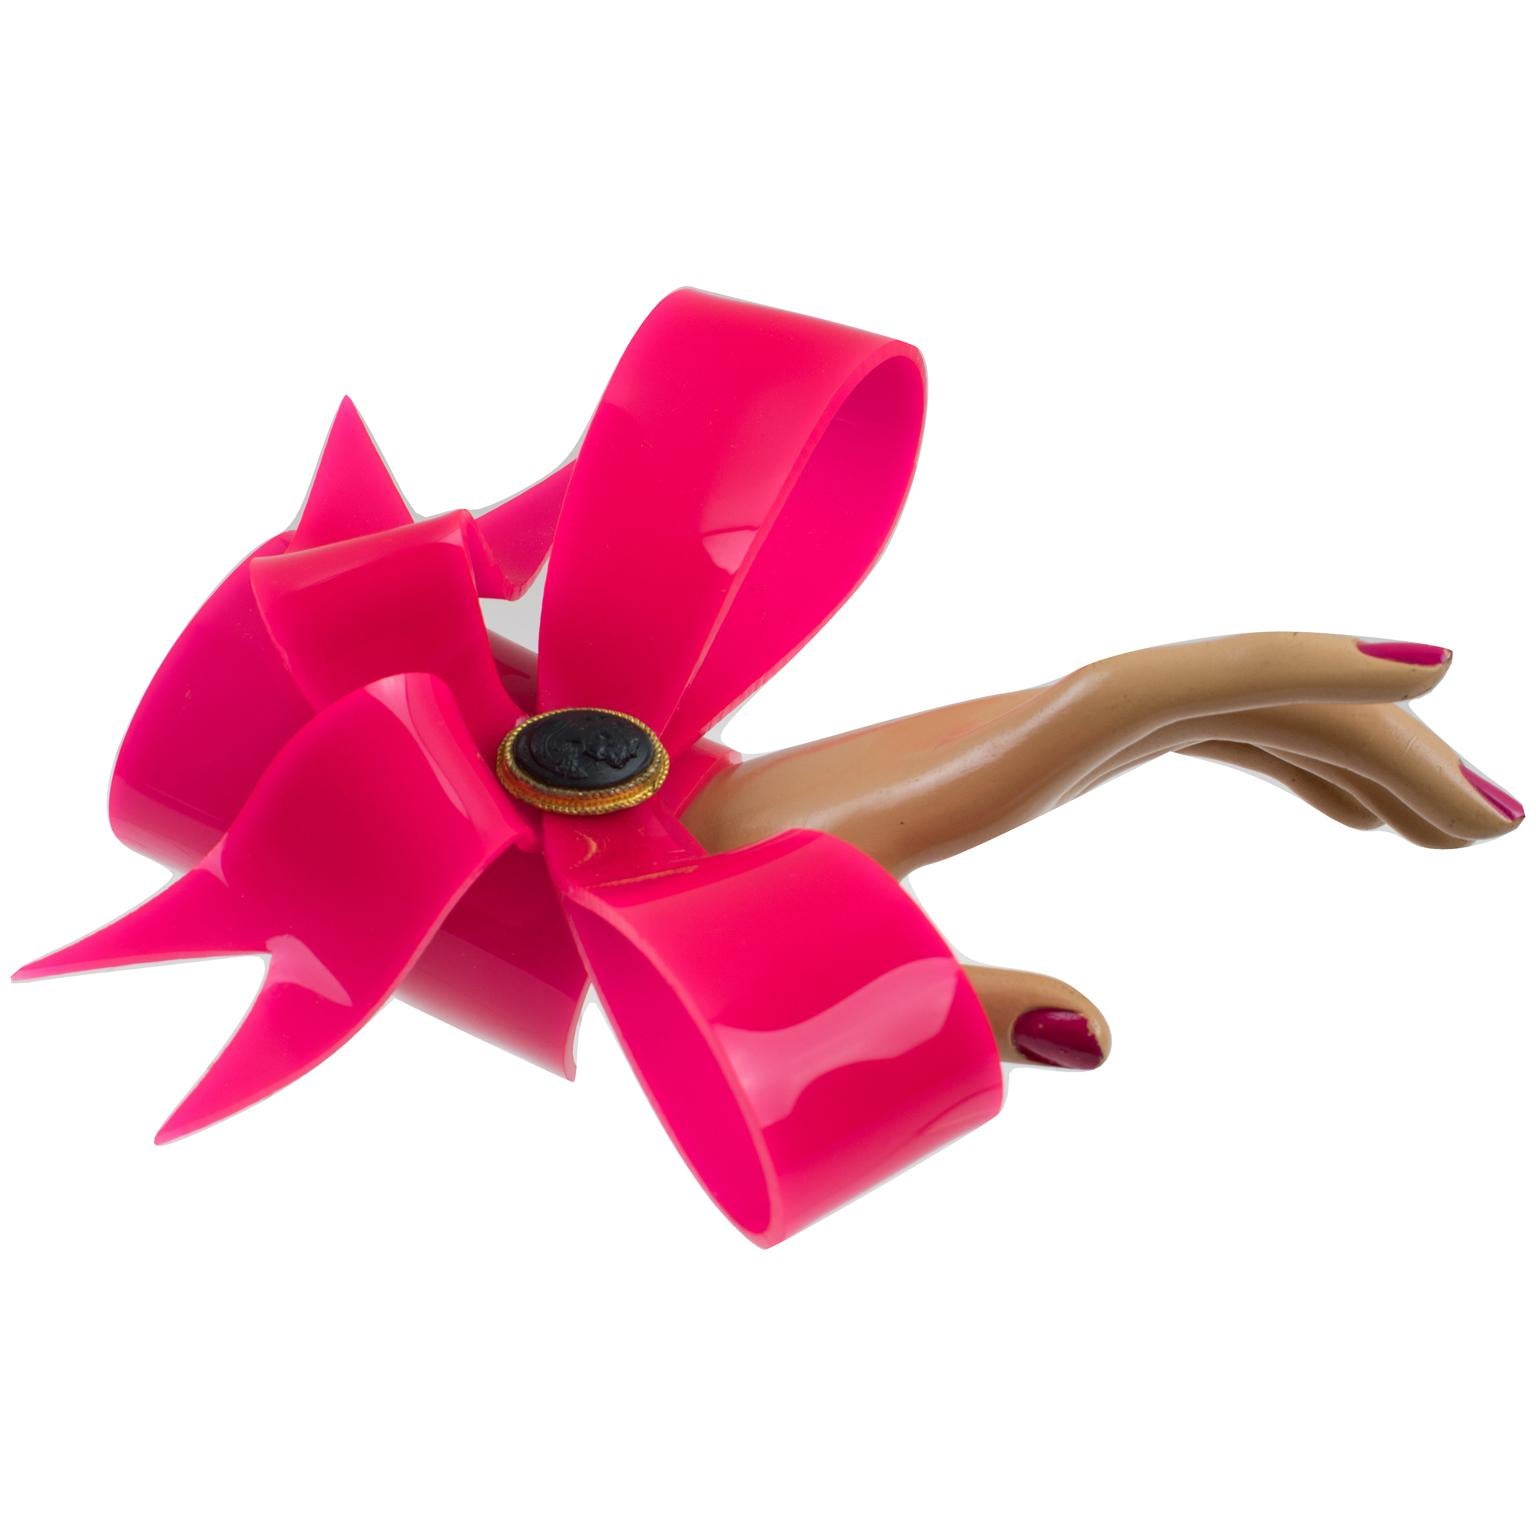 Vivienne Westwood Prototype Cuff Bangle Bracelet Pink Acrylic Bow 4